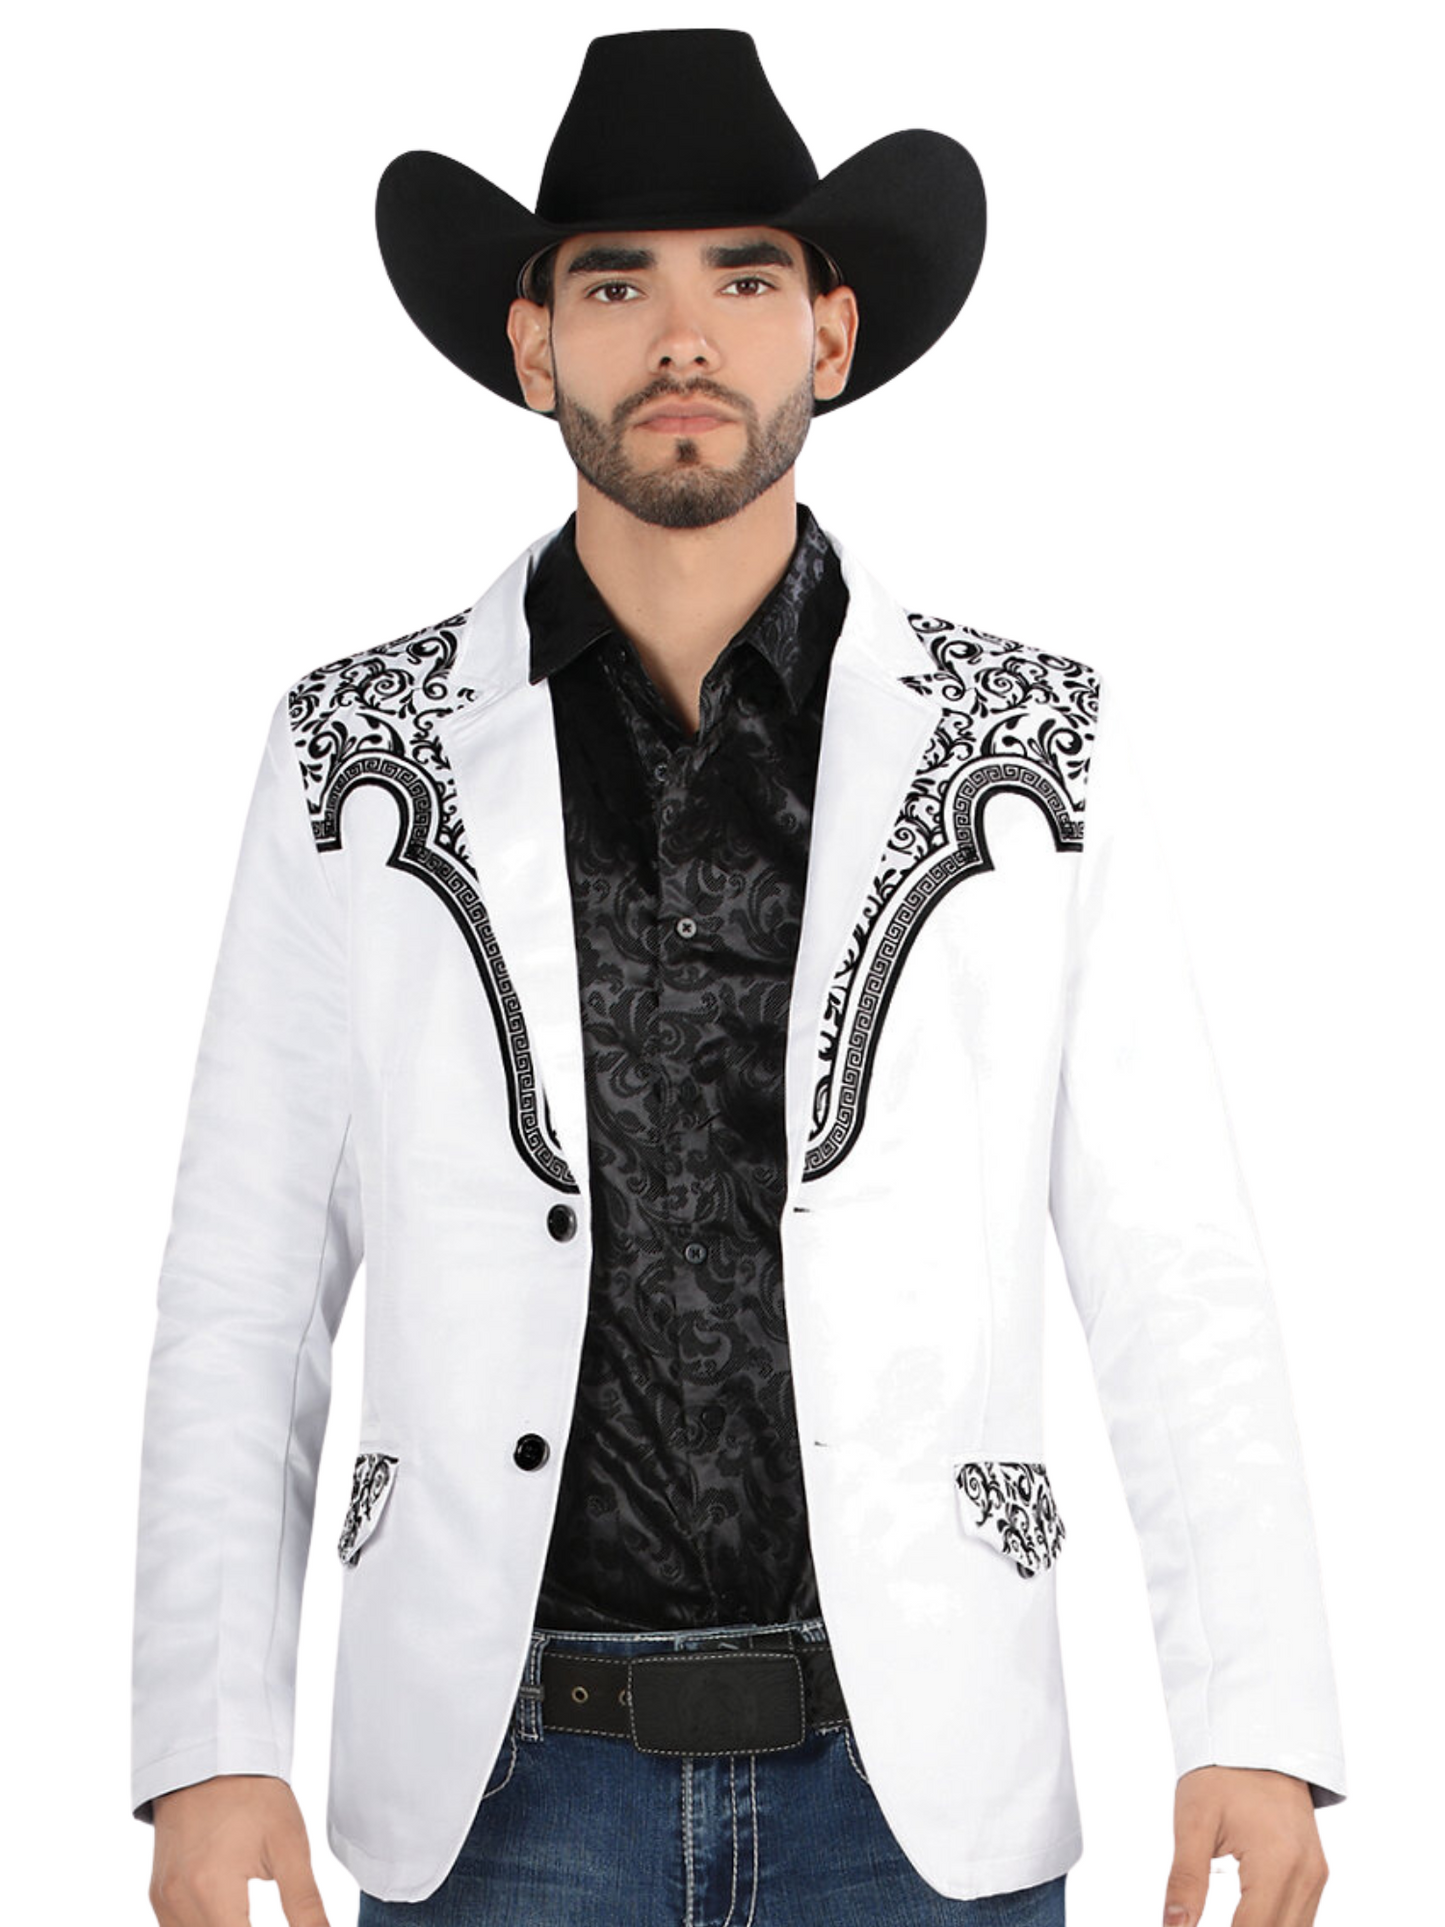 Embroidered Denim Jacket for Men 'Montero' - ID: 2179 Western Blazer Montero White